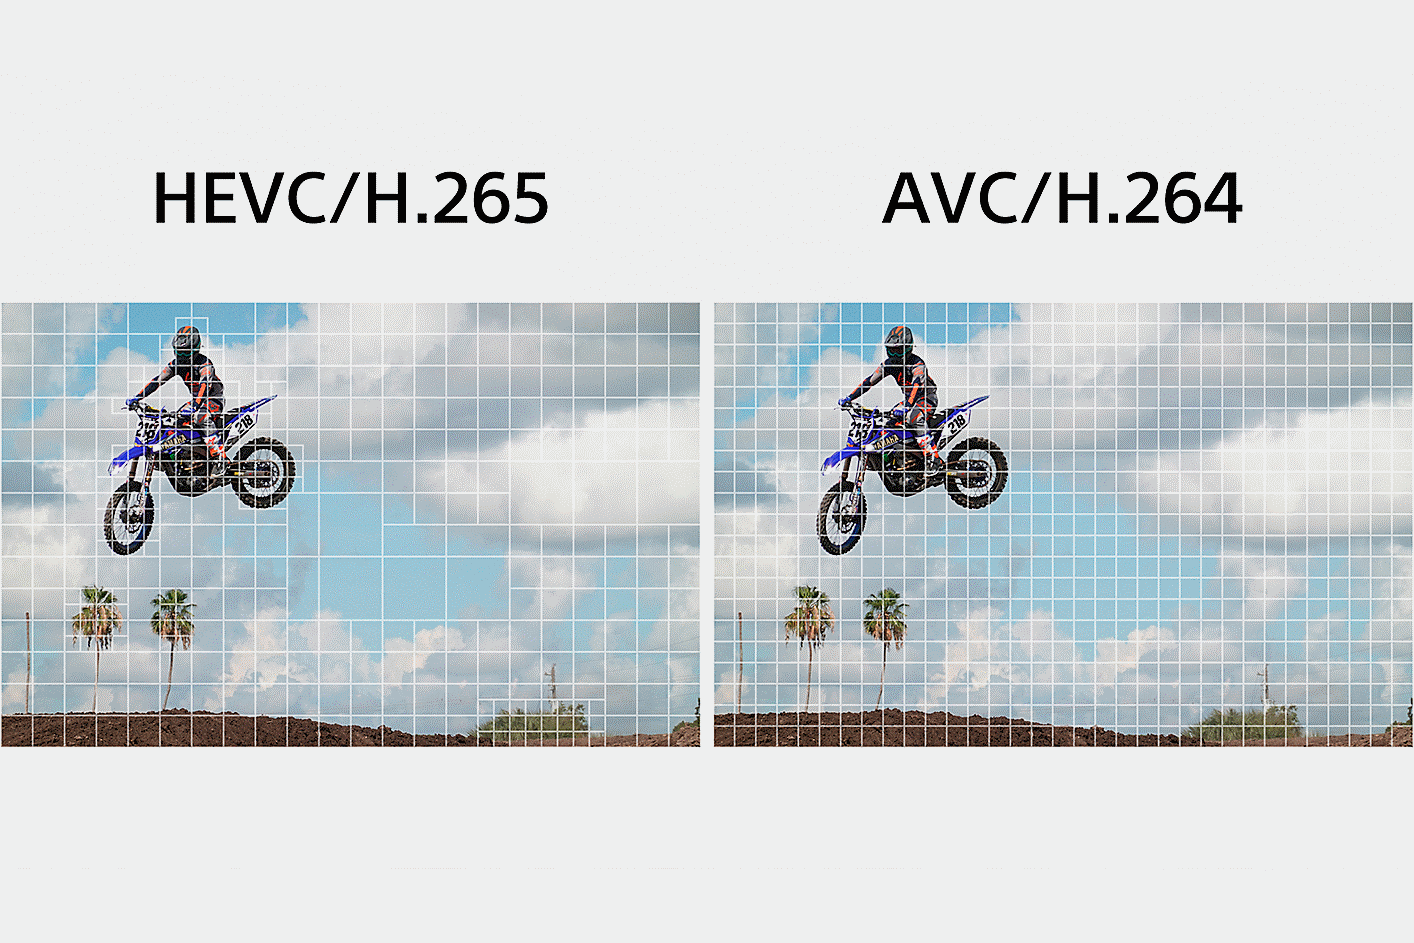 À gauche : HEVC/H.265, qui divise une partie du clip en segments plus fins pour traiter les données ; à droite : AVC/H.264, qui divise également l'ensemble des images vidéo pour traiter les données